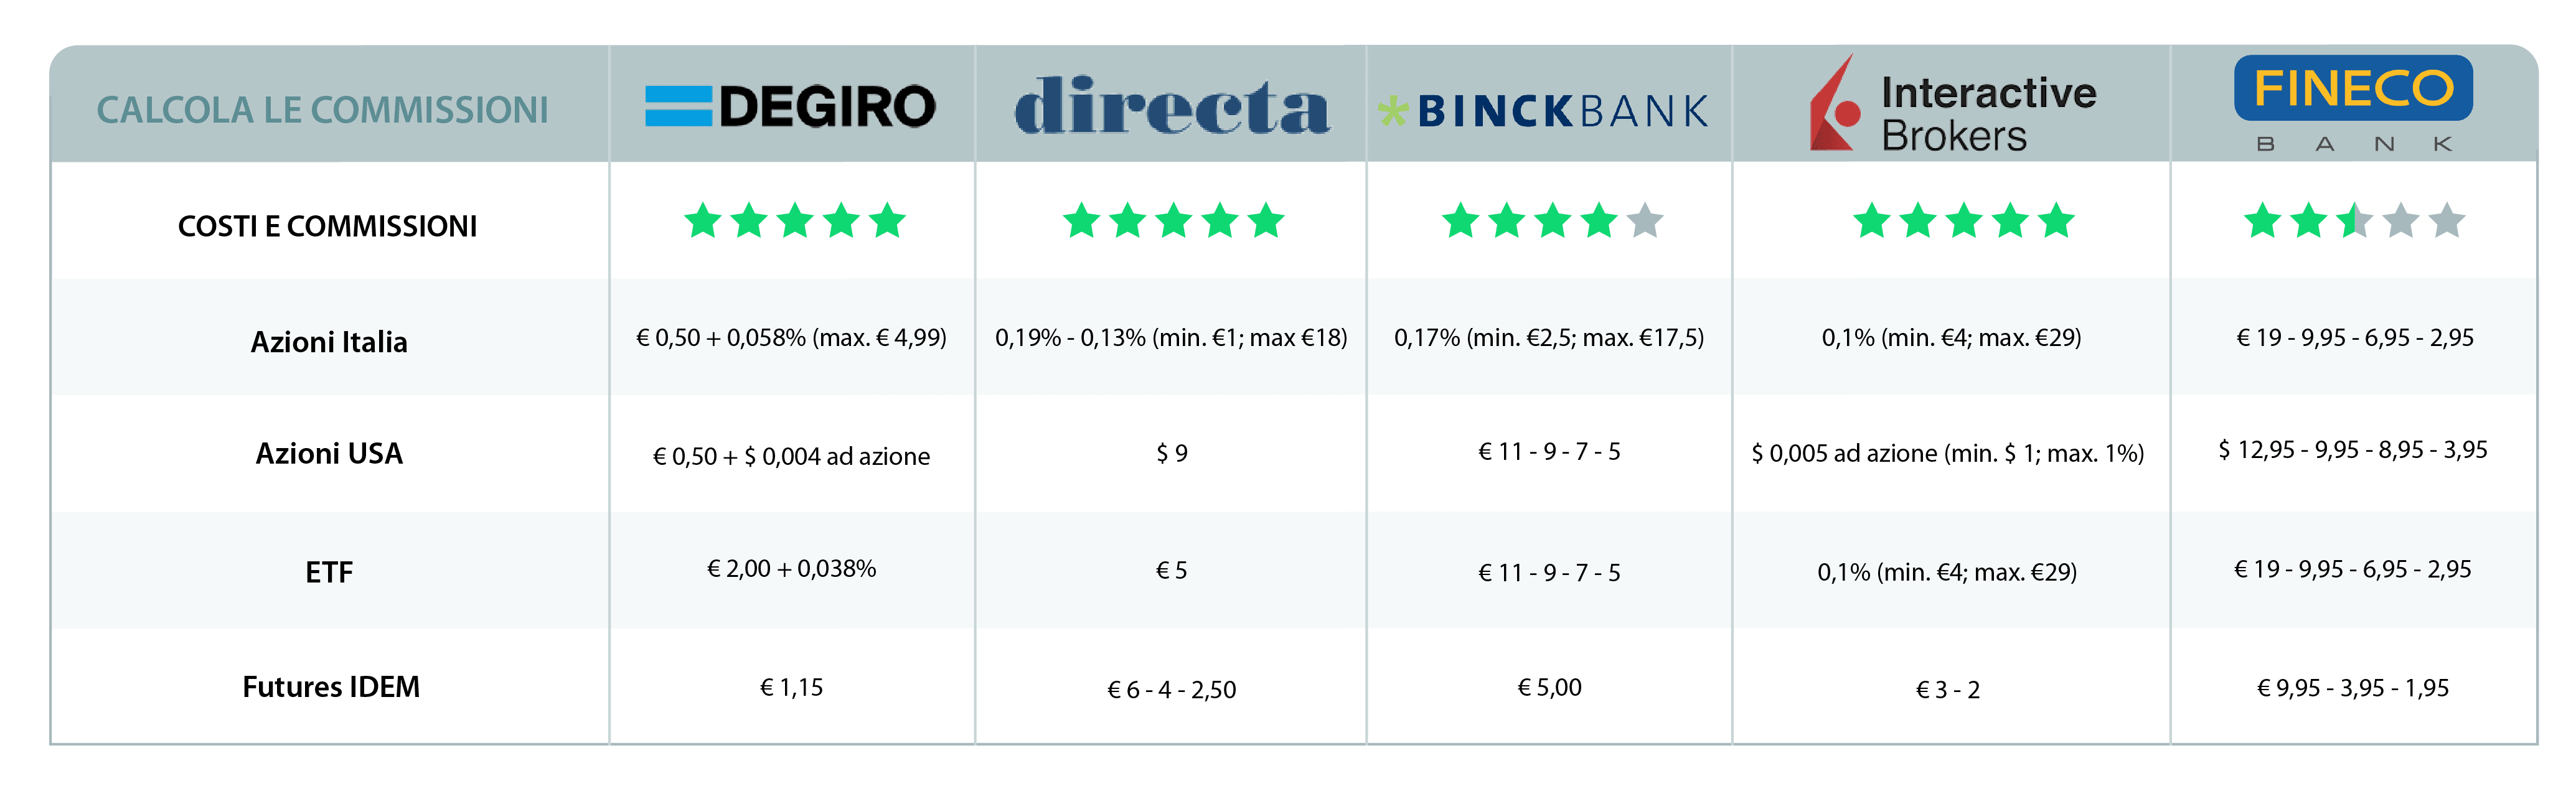 Tabella commissioni FINECO vs competitors